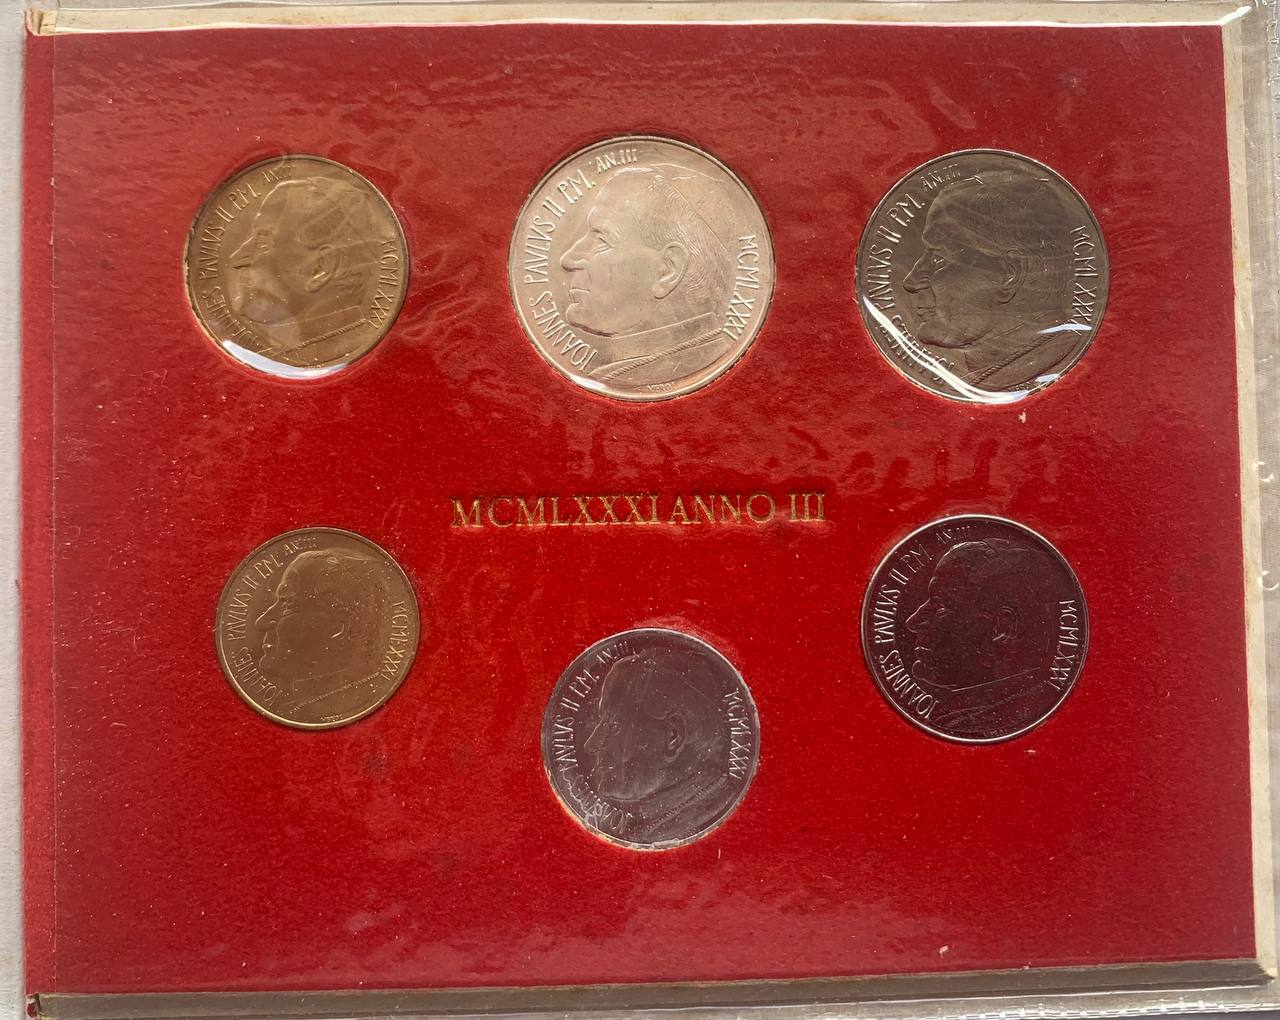  Jahresset von Vatikan 1981 BU (6 Münzen)   